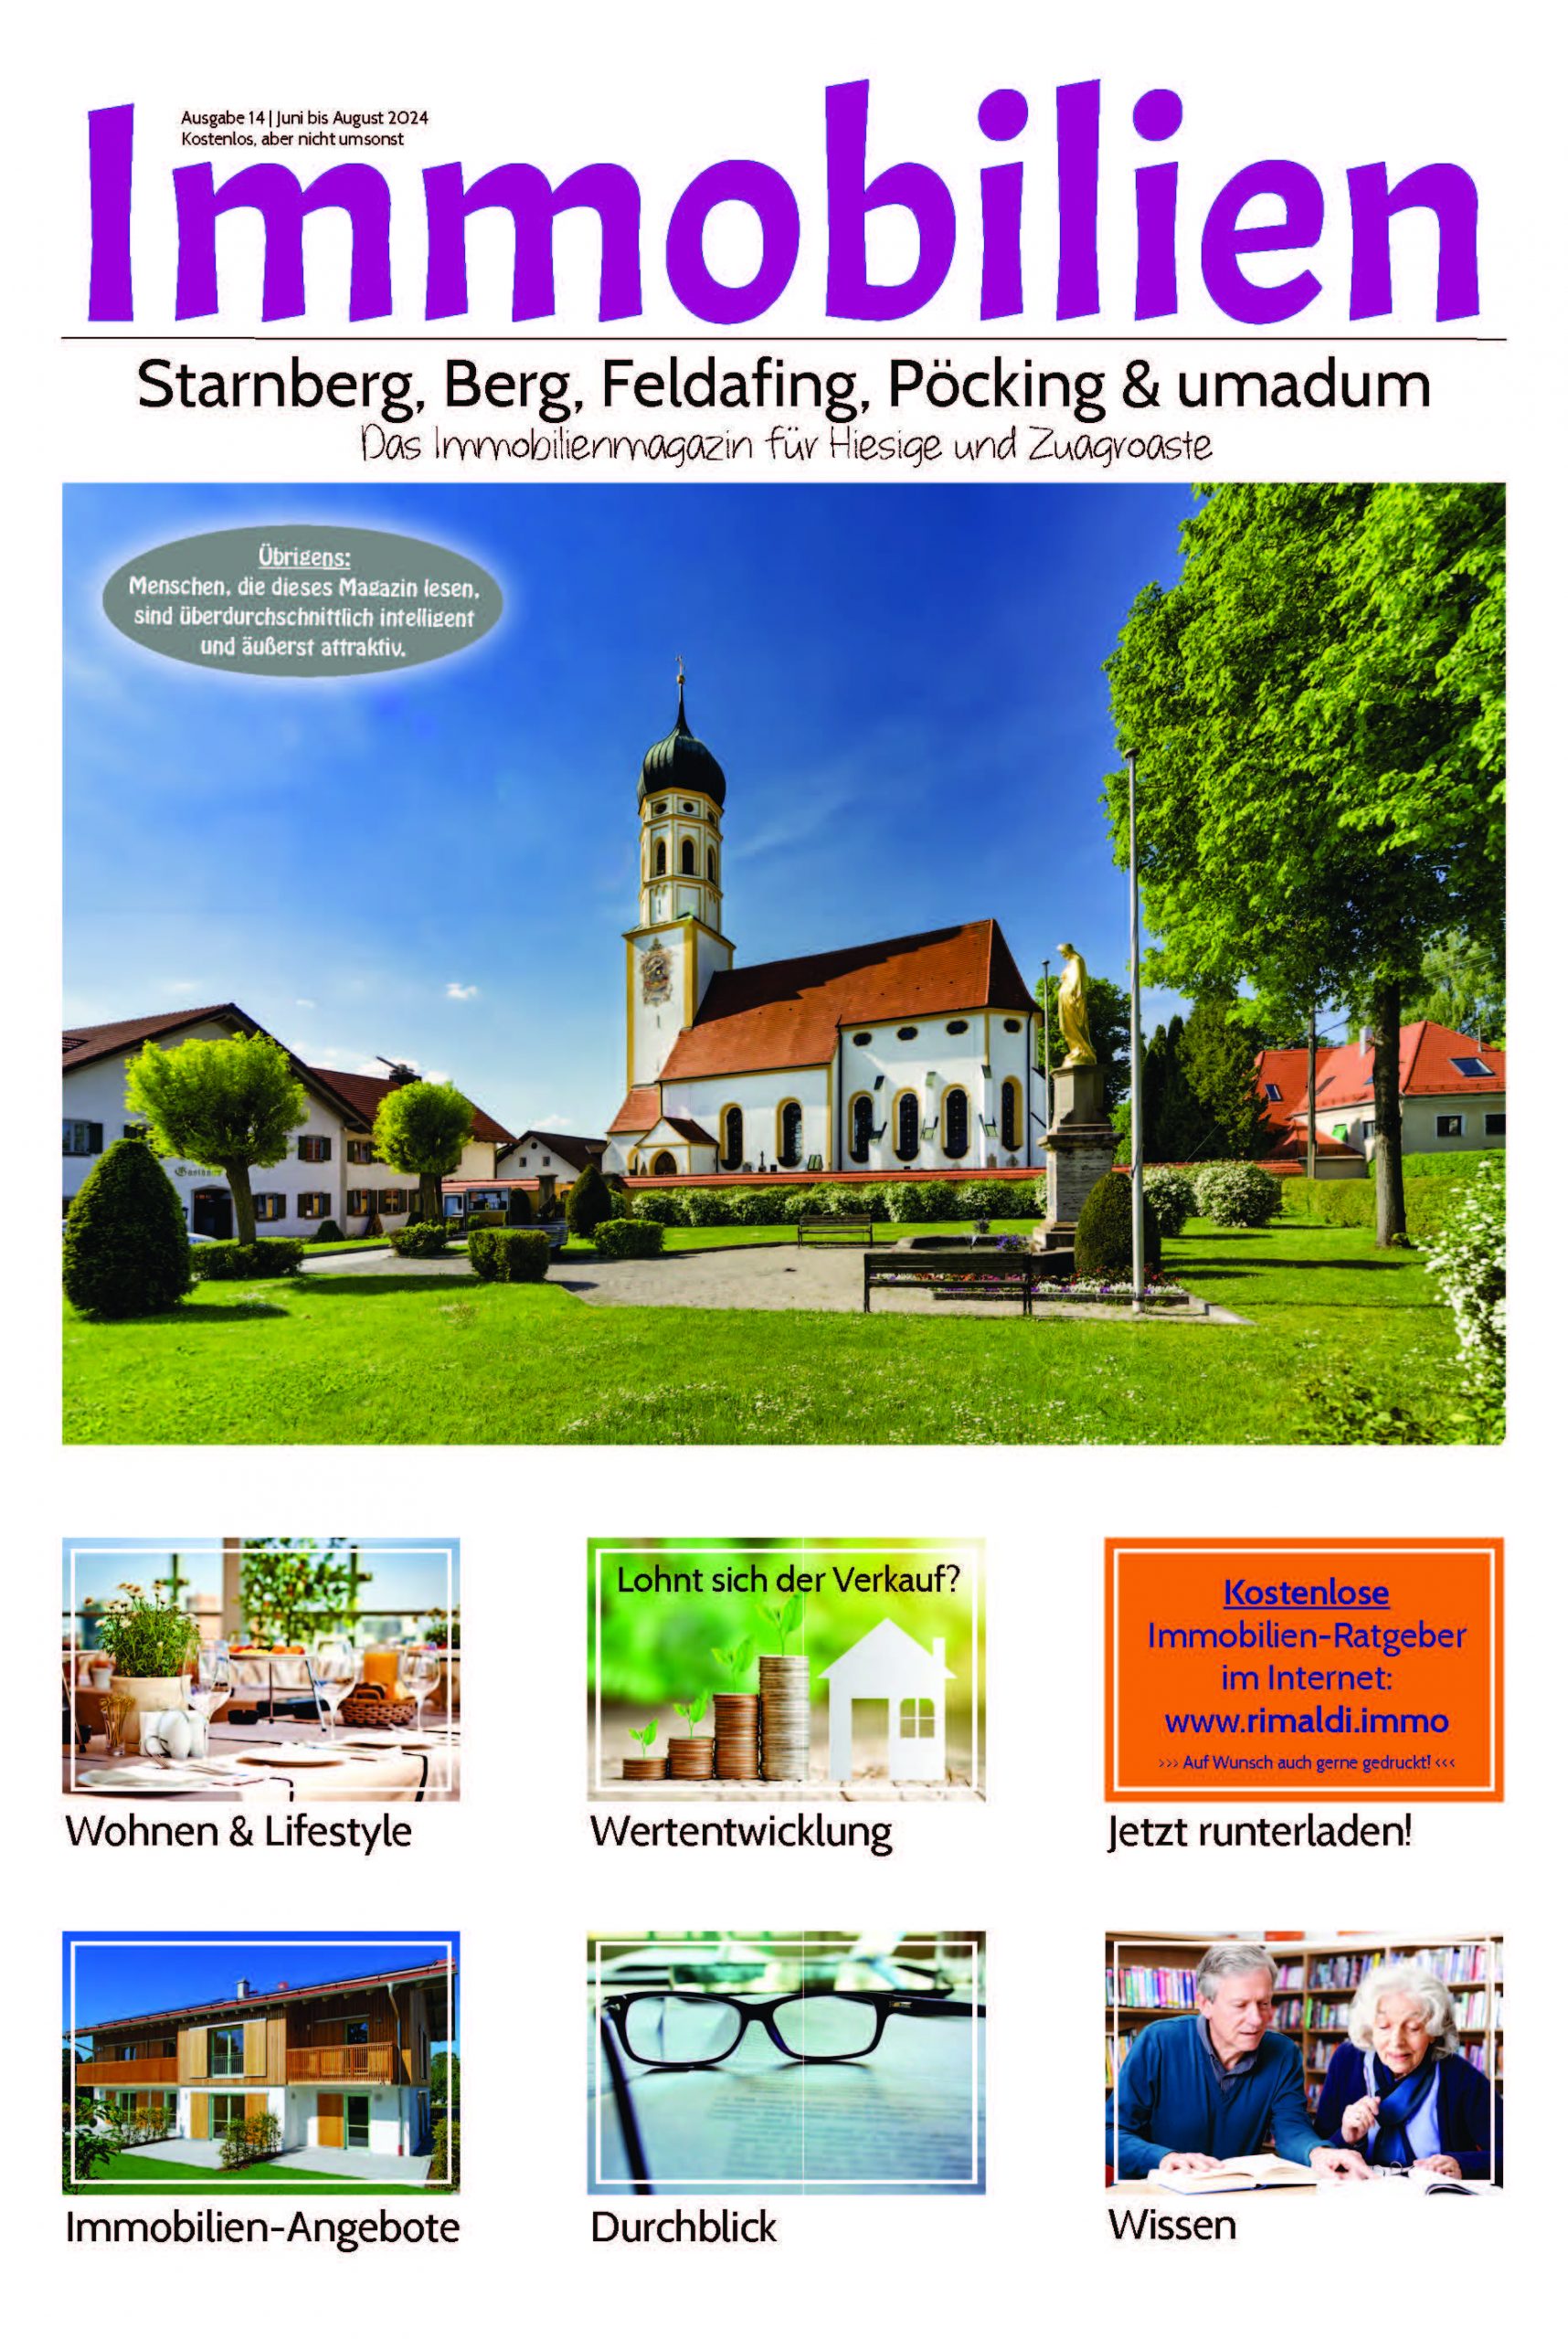 Die 14. ausgabe des Starnberger Immobilienmagazines herausgegeben von Wandl.Immobilien Makler im Würmtal und in Stanberg